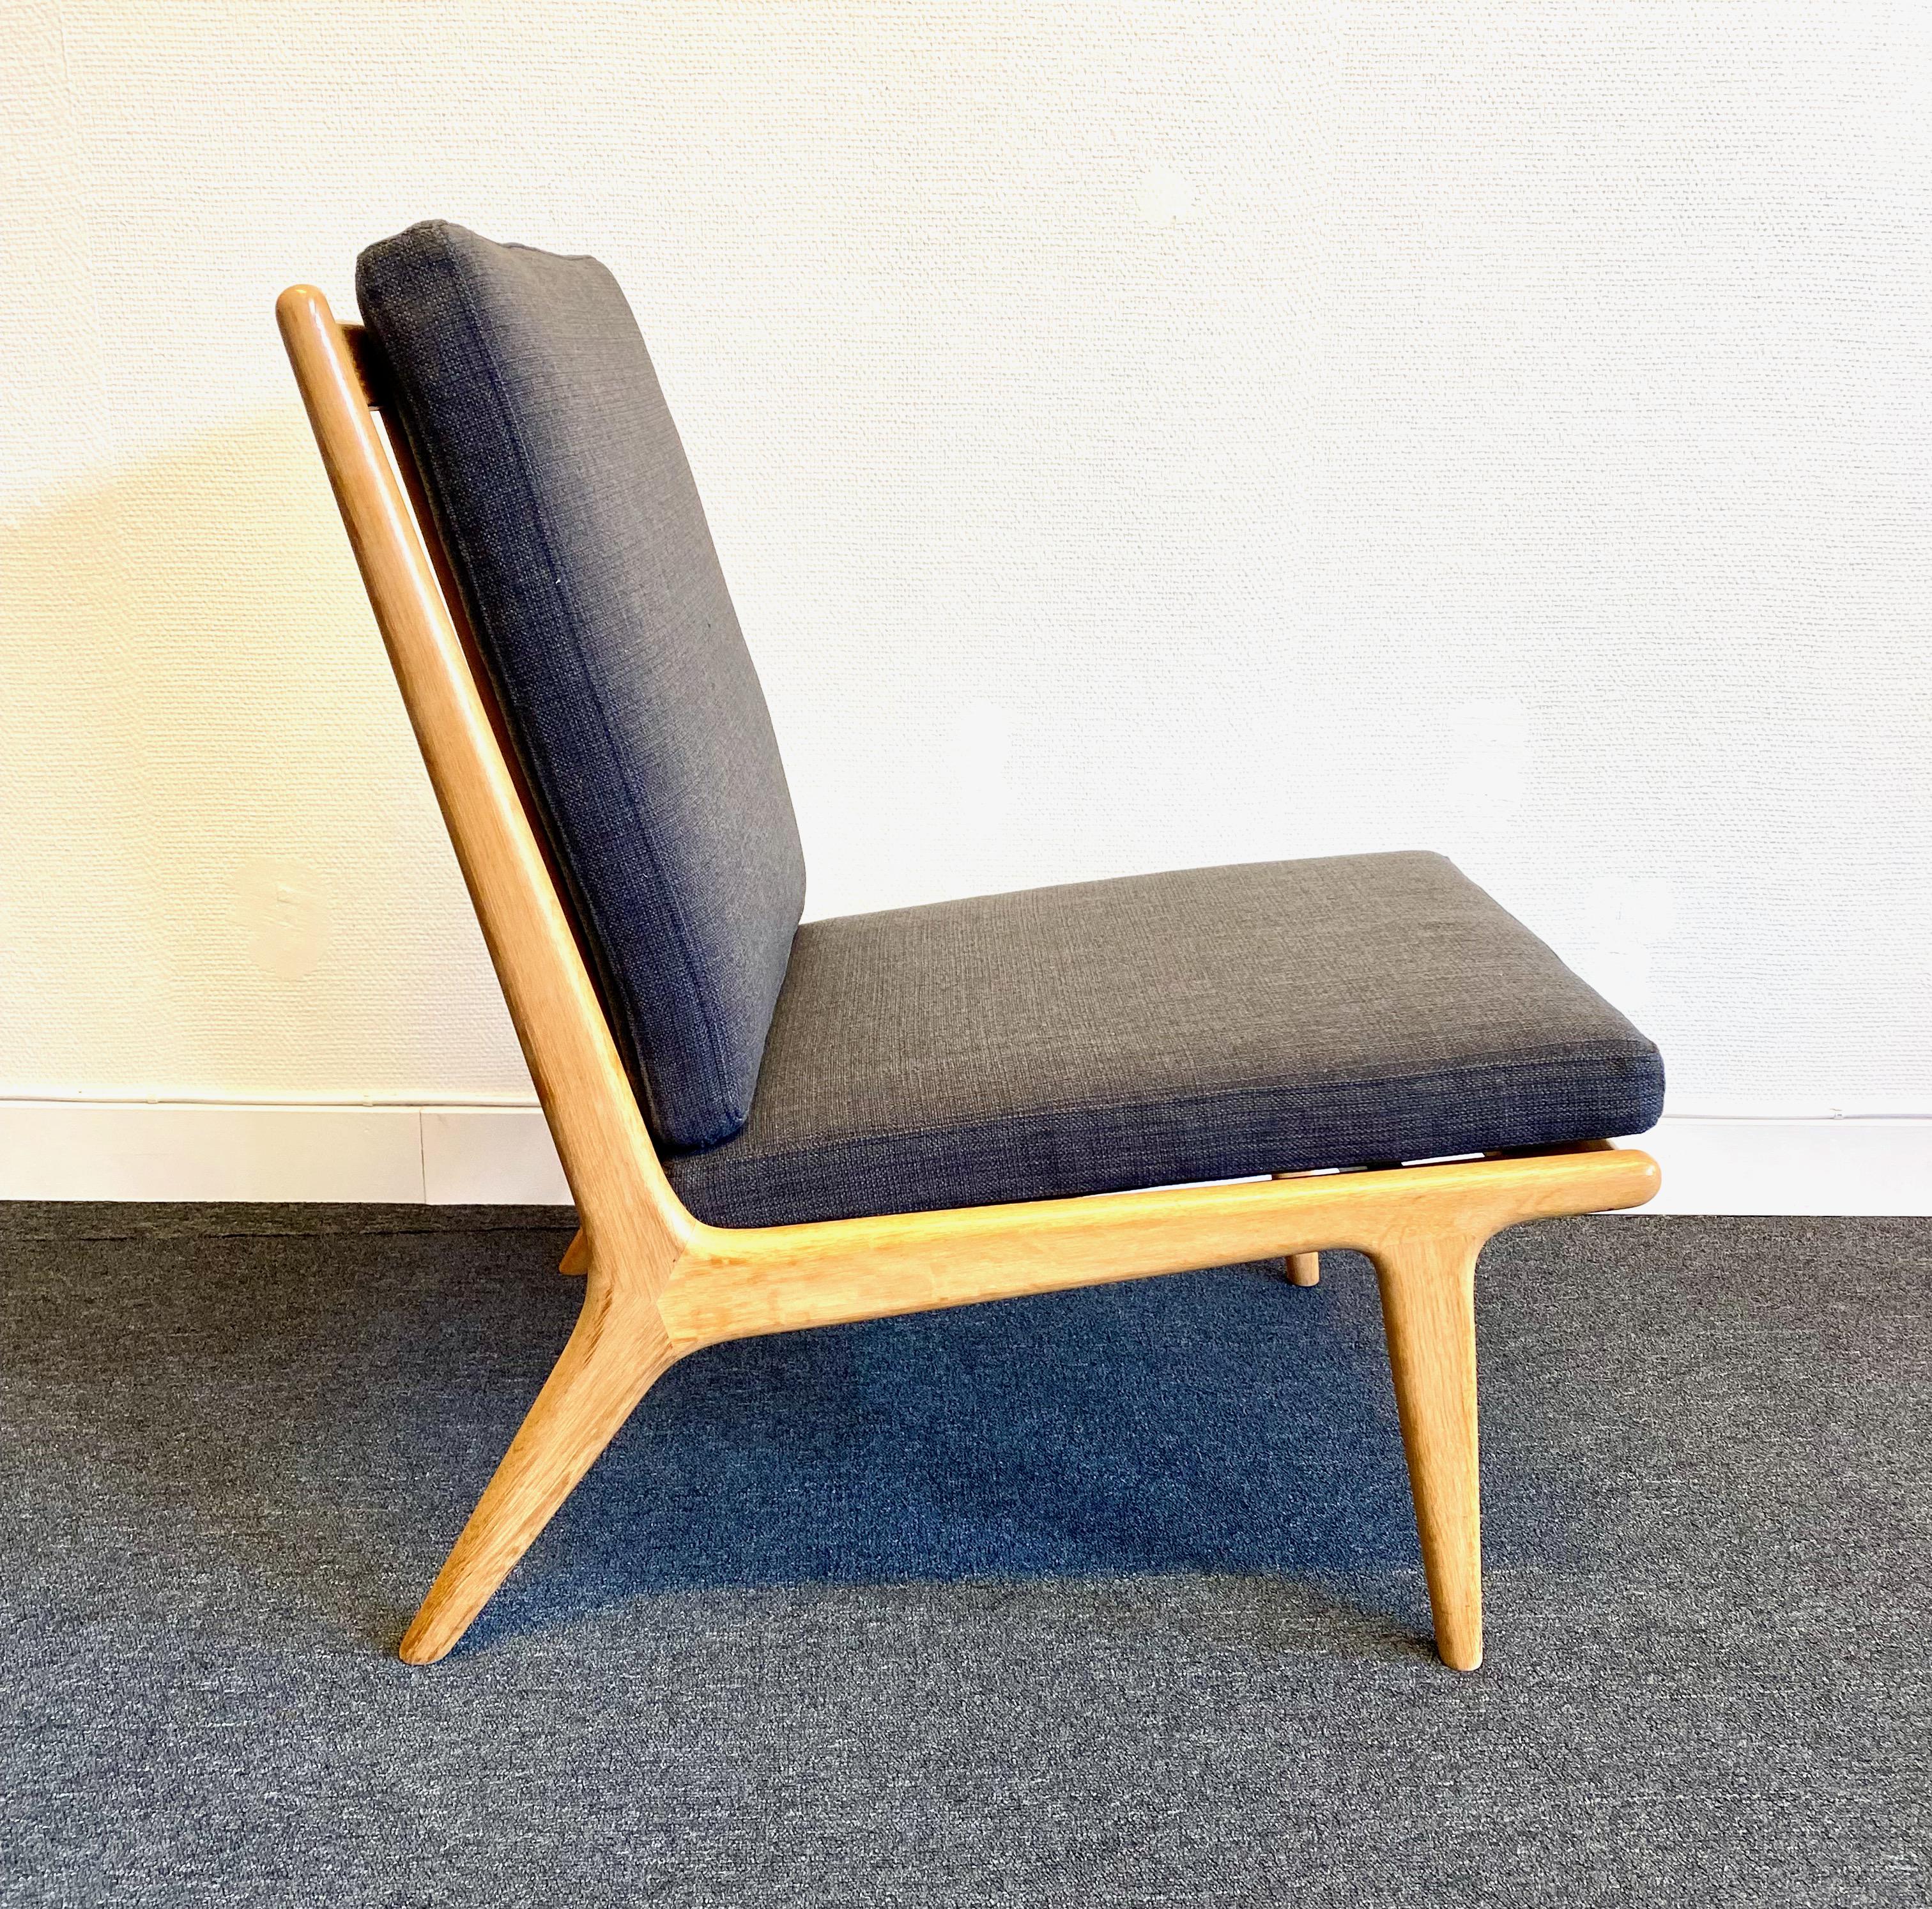 Loungesessel aus Eichenholz und Ekselius' Version des beliebten TV-Sessels aus den 60er Jahren. Neue Kissen mit einer glatten braunen Qualitätspolsterung. Im Moment haben wir 3 identische Stühle.

Karl Erik Ekselius war ein schwedischer